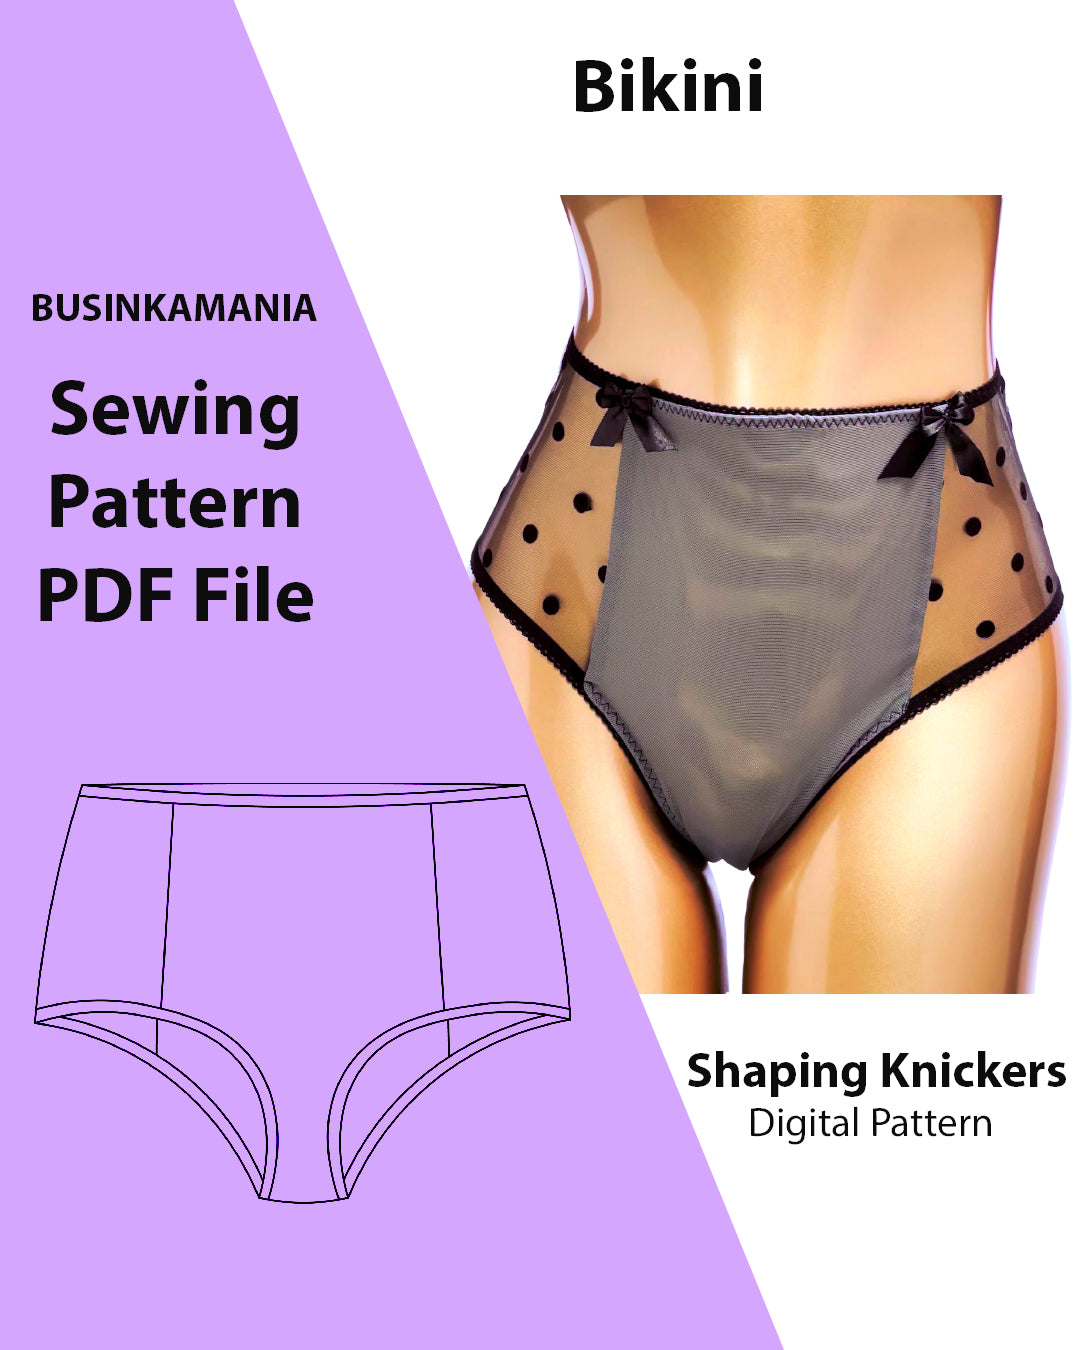 Bikini Shaping Knickers Sewing Pattern – BusinkaMania